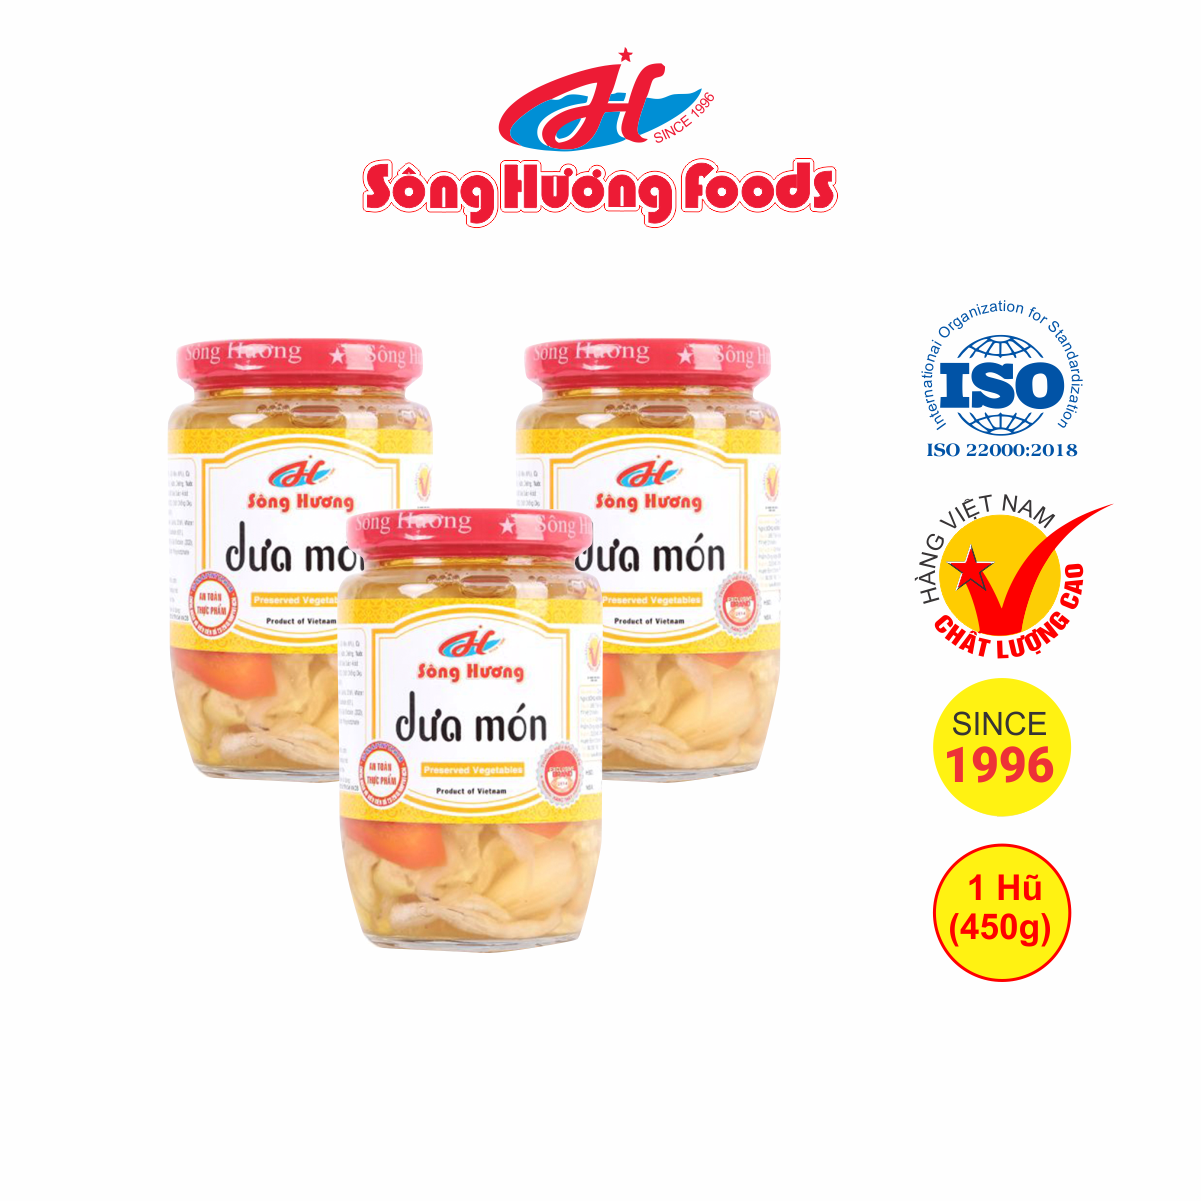 3 Hũ Dưa Món Sông Hương Foods Hũ 450g